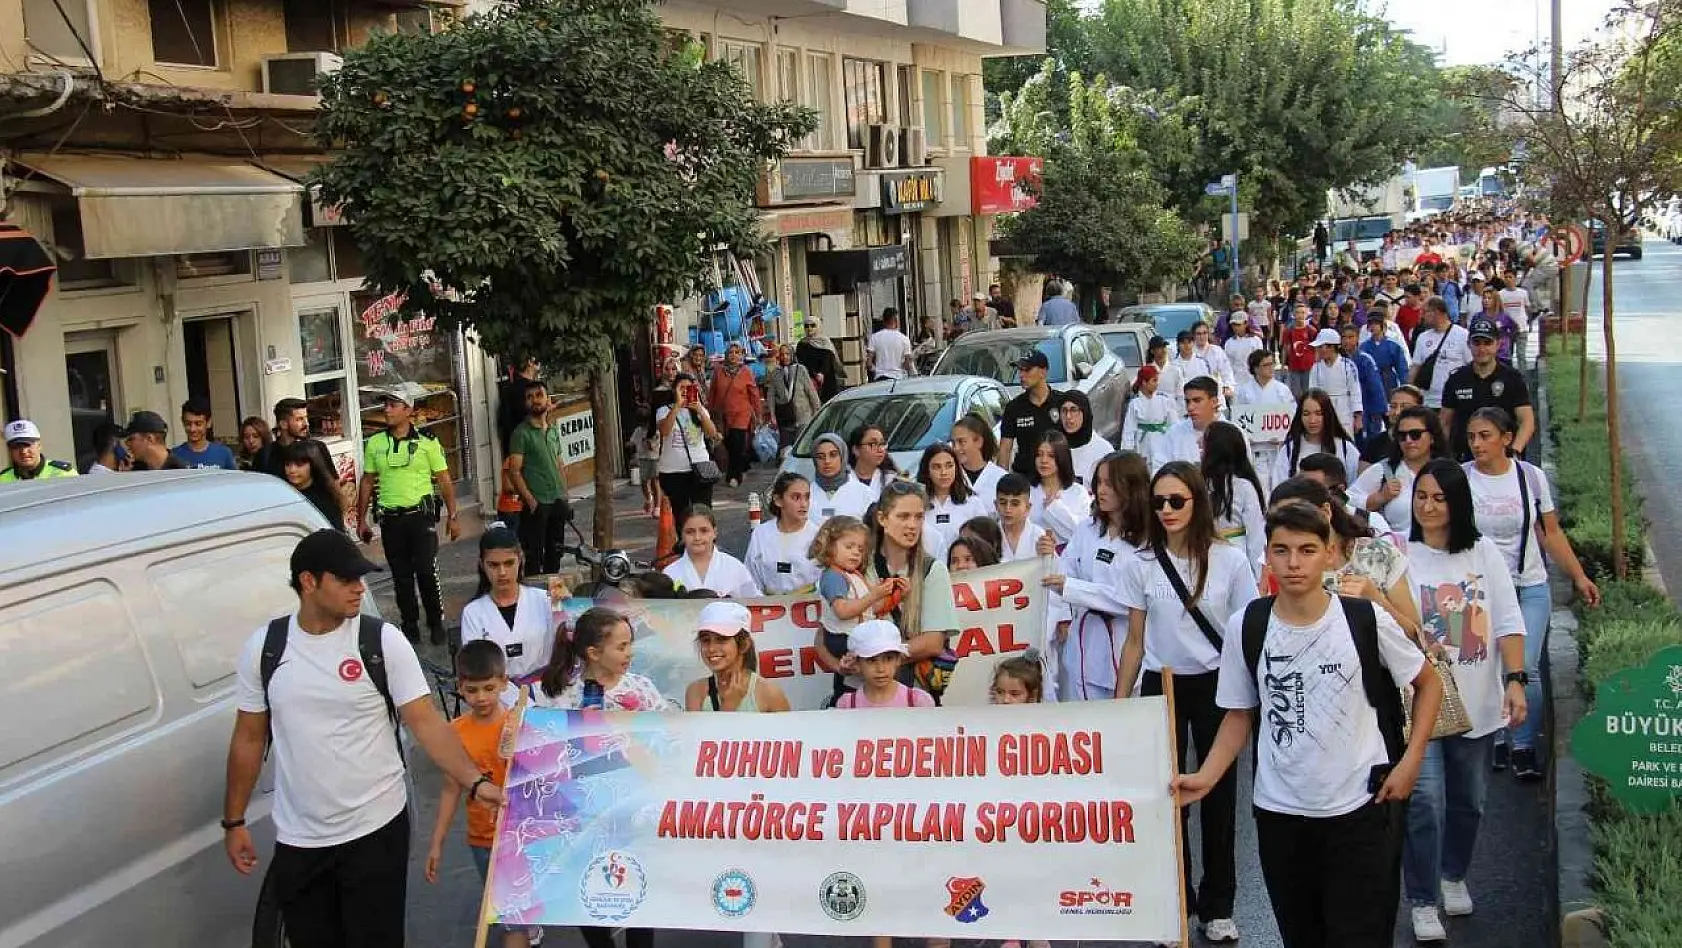 Aydın'da Amatör Spor Haftası kutlamaları coşkulu bir şekilde başladı